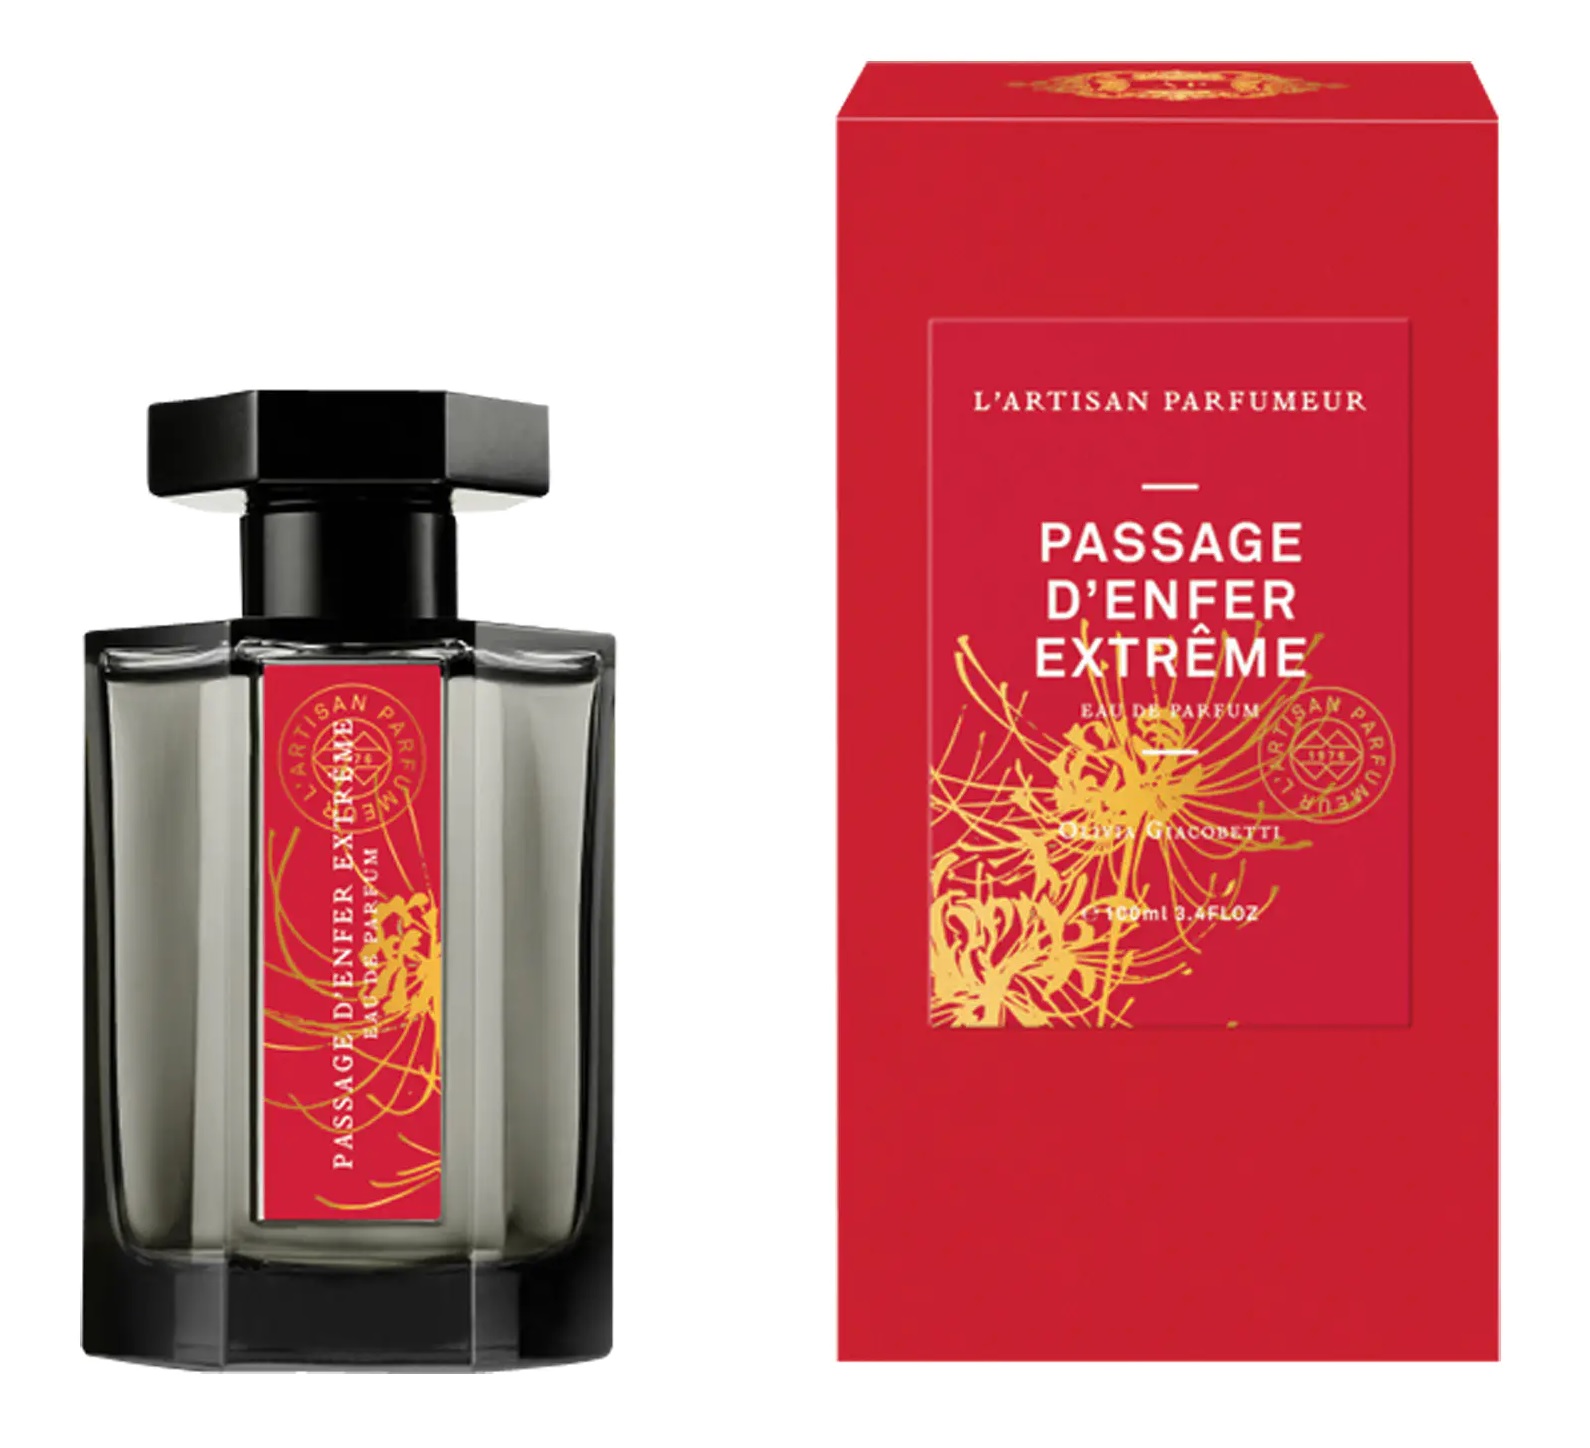 Parenti Profumeria | L Artisan Parfumeur PASSAGE D' ENFER EXTREME